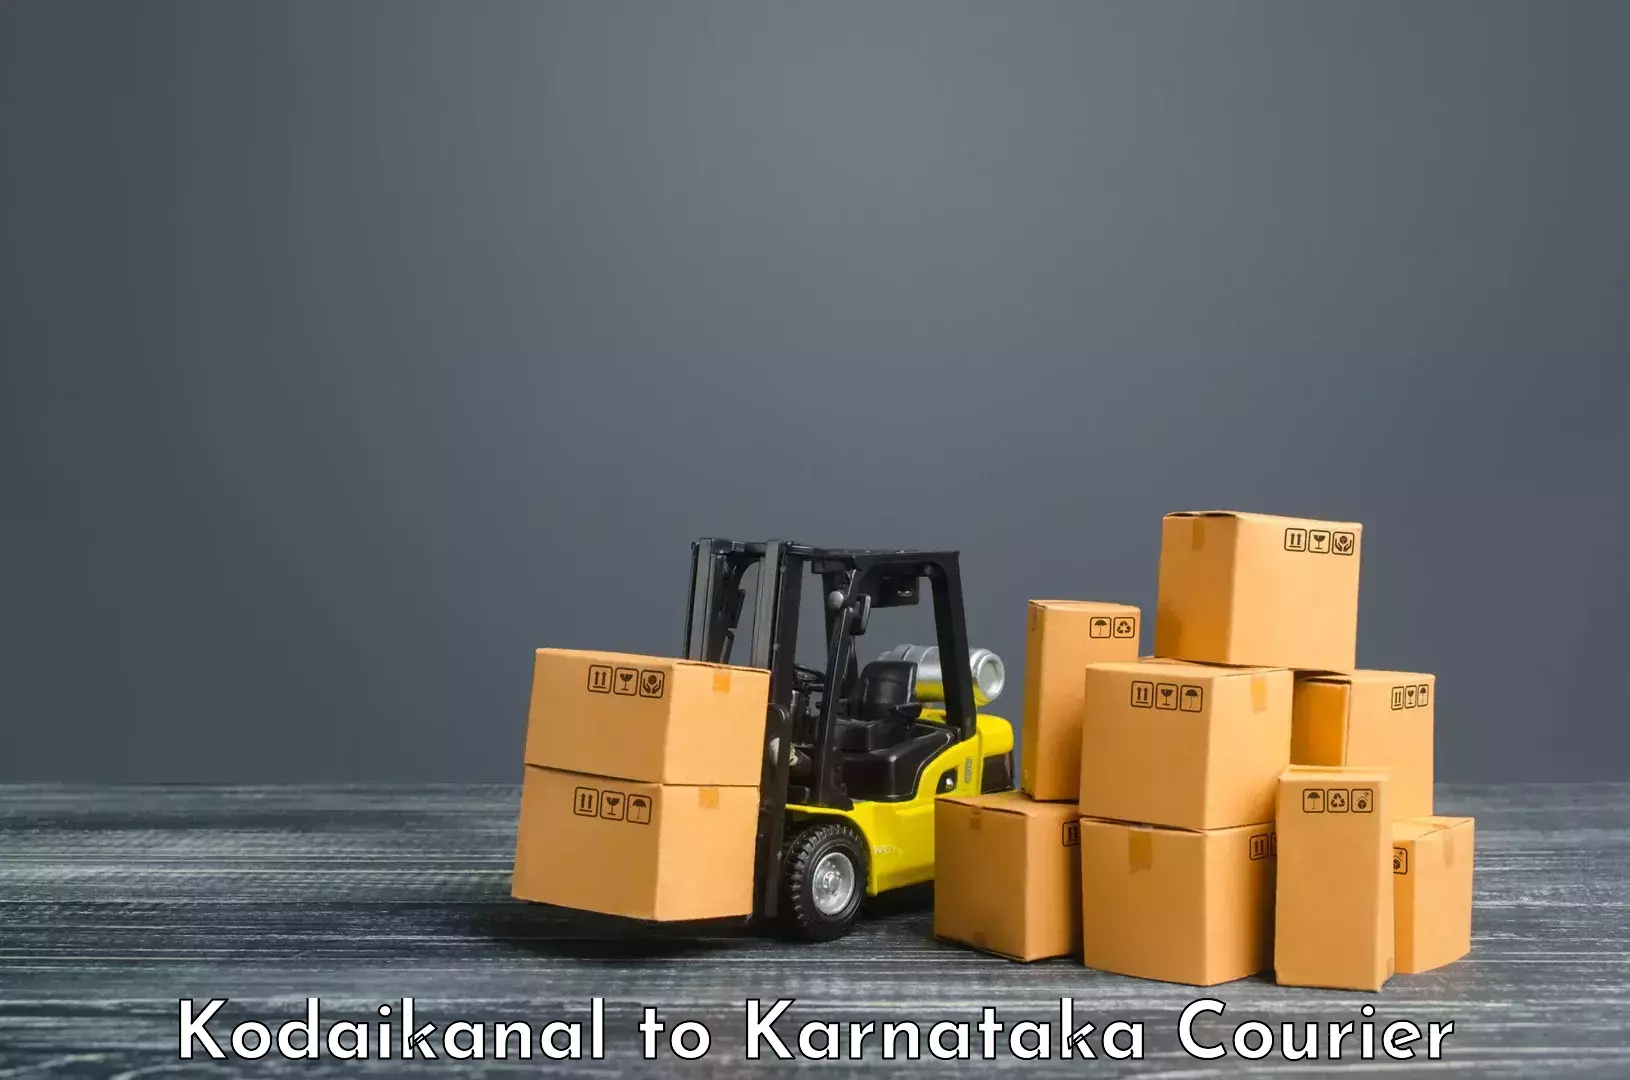 Global logistics network Kodaikanal to Bijapur